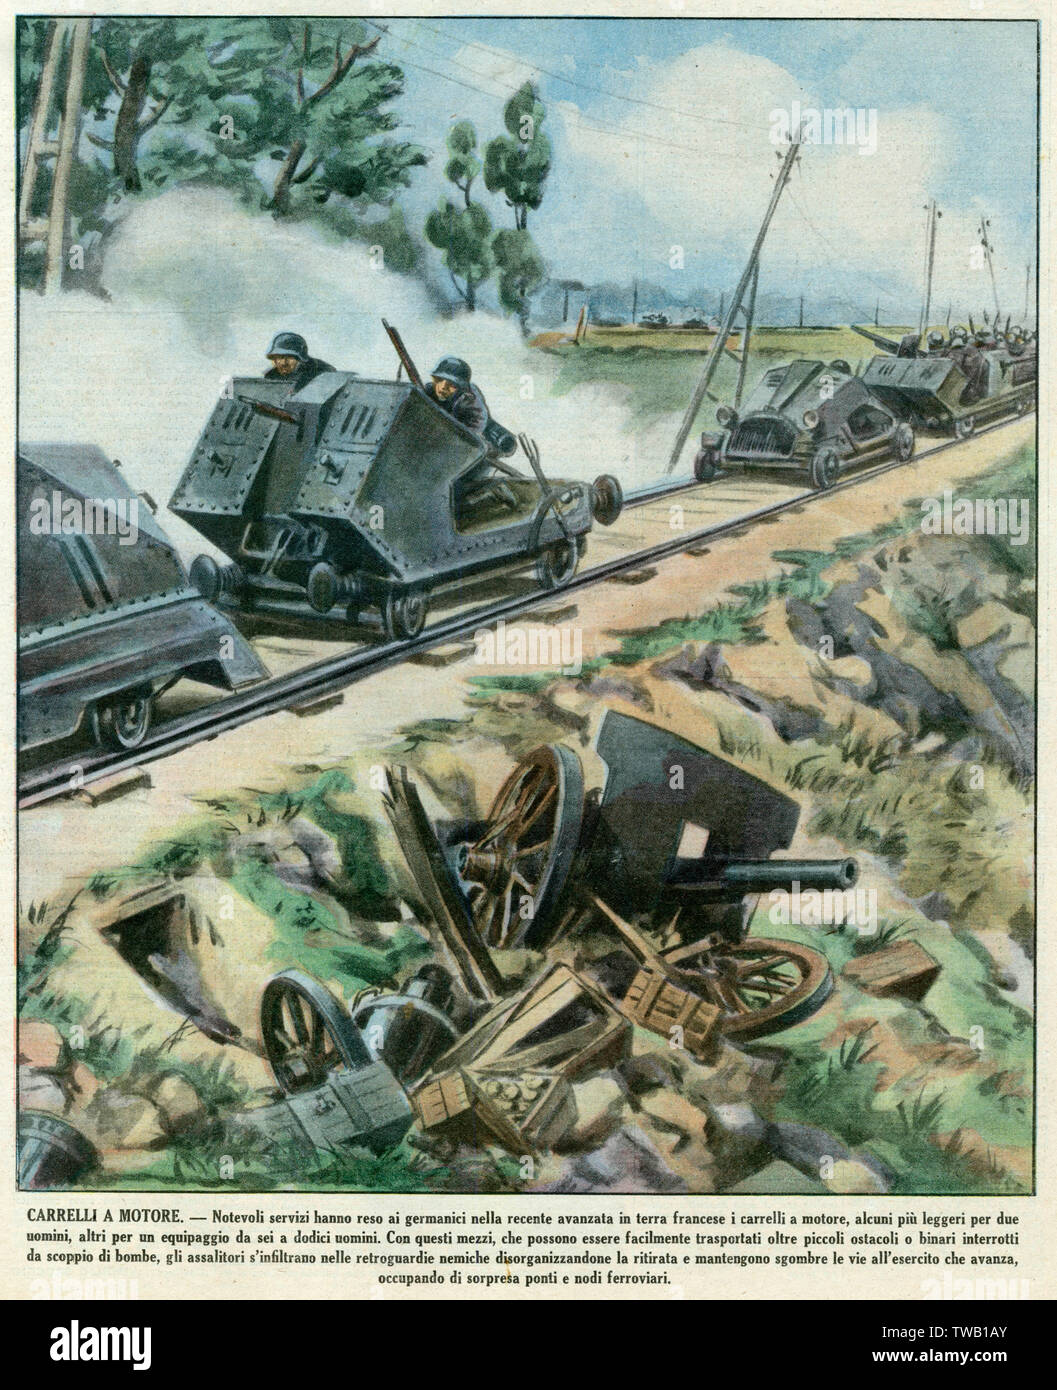 Francia: la invasión del Ejército Alemán es tan rápida porque hacen buen uso de equipo militar de alta tecnología, tales como el ferrocarril-ametralladoras portadores de junio de 1940 Foto de stock